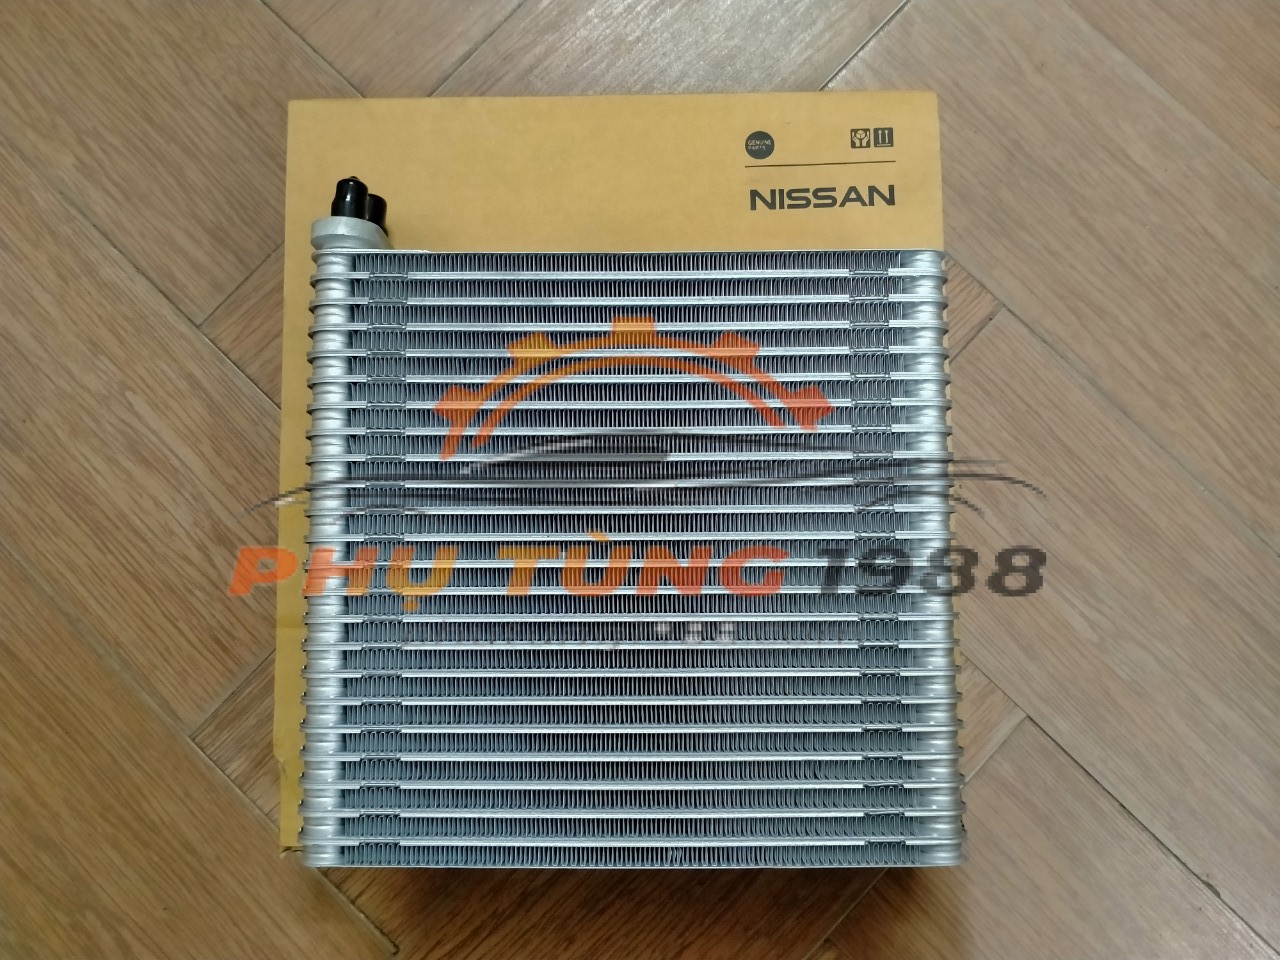 Giàn lạnh trong xe Nissan Sunny 2013-2018 chính hãng mã 272801HC0A